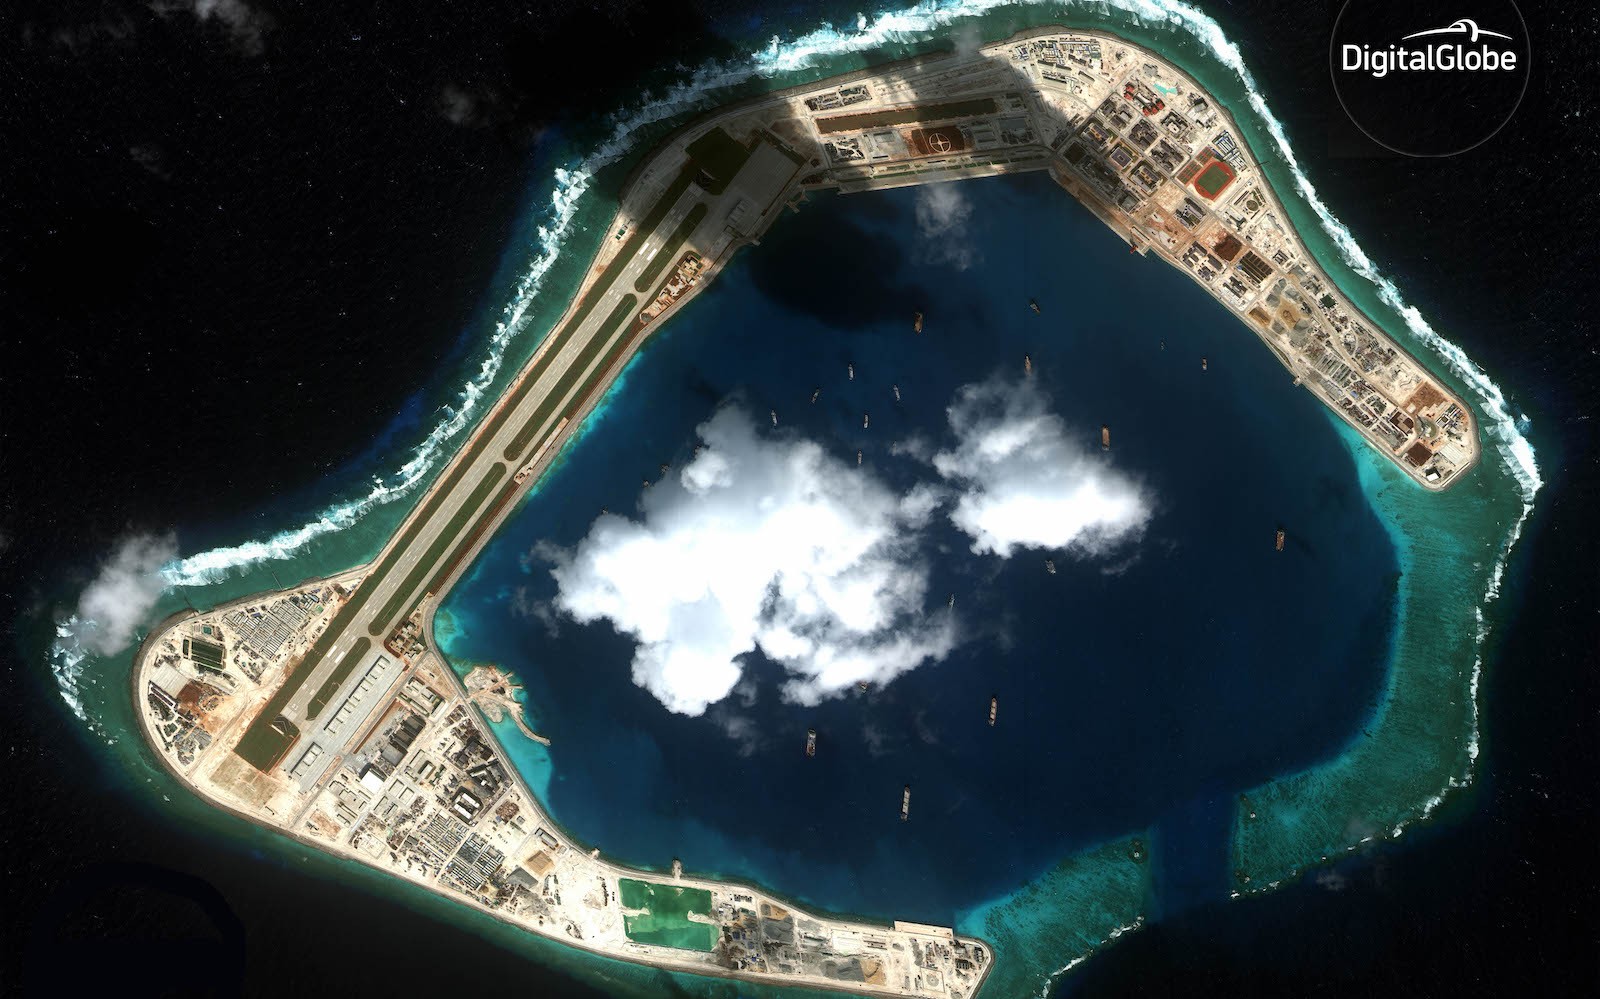 Zobrazowanie jednej z wysp archipelagu Spratly (Subi Reef) wykonane w 2016 roku przez satelitę WorldView-4 (Maxar, wcześniej Digital Globe). Fot. Maxar Technologies/Digital Globe